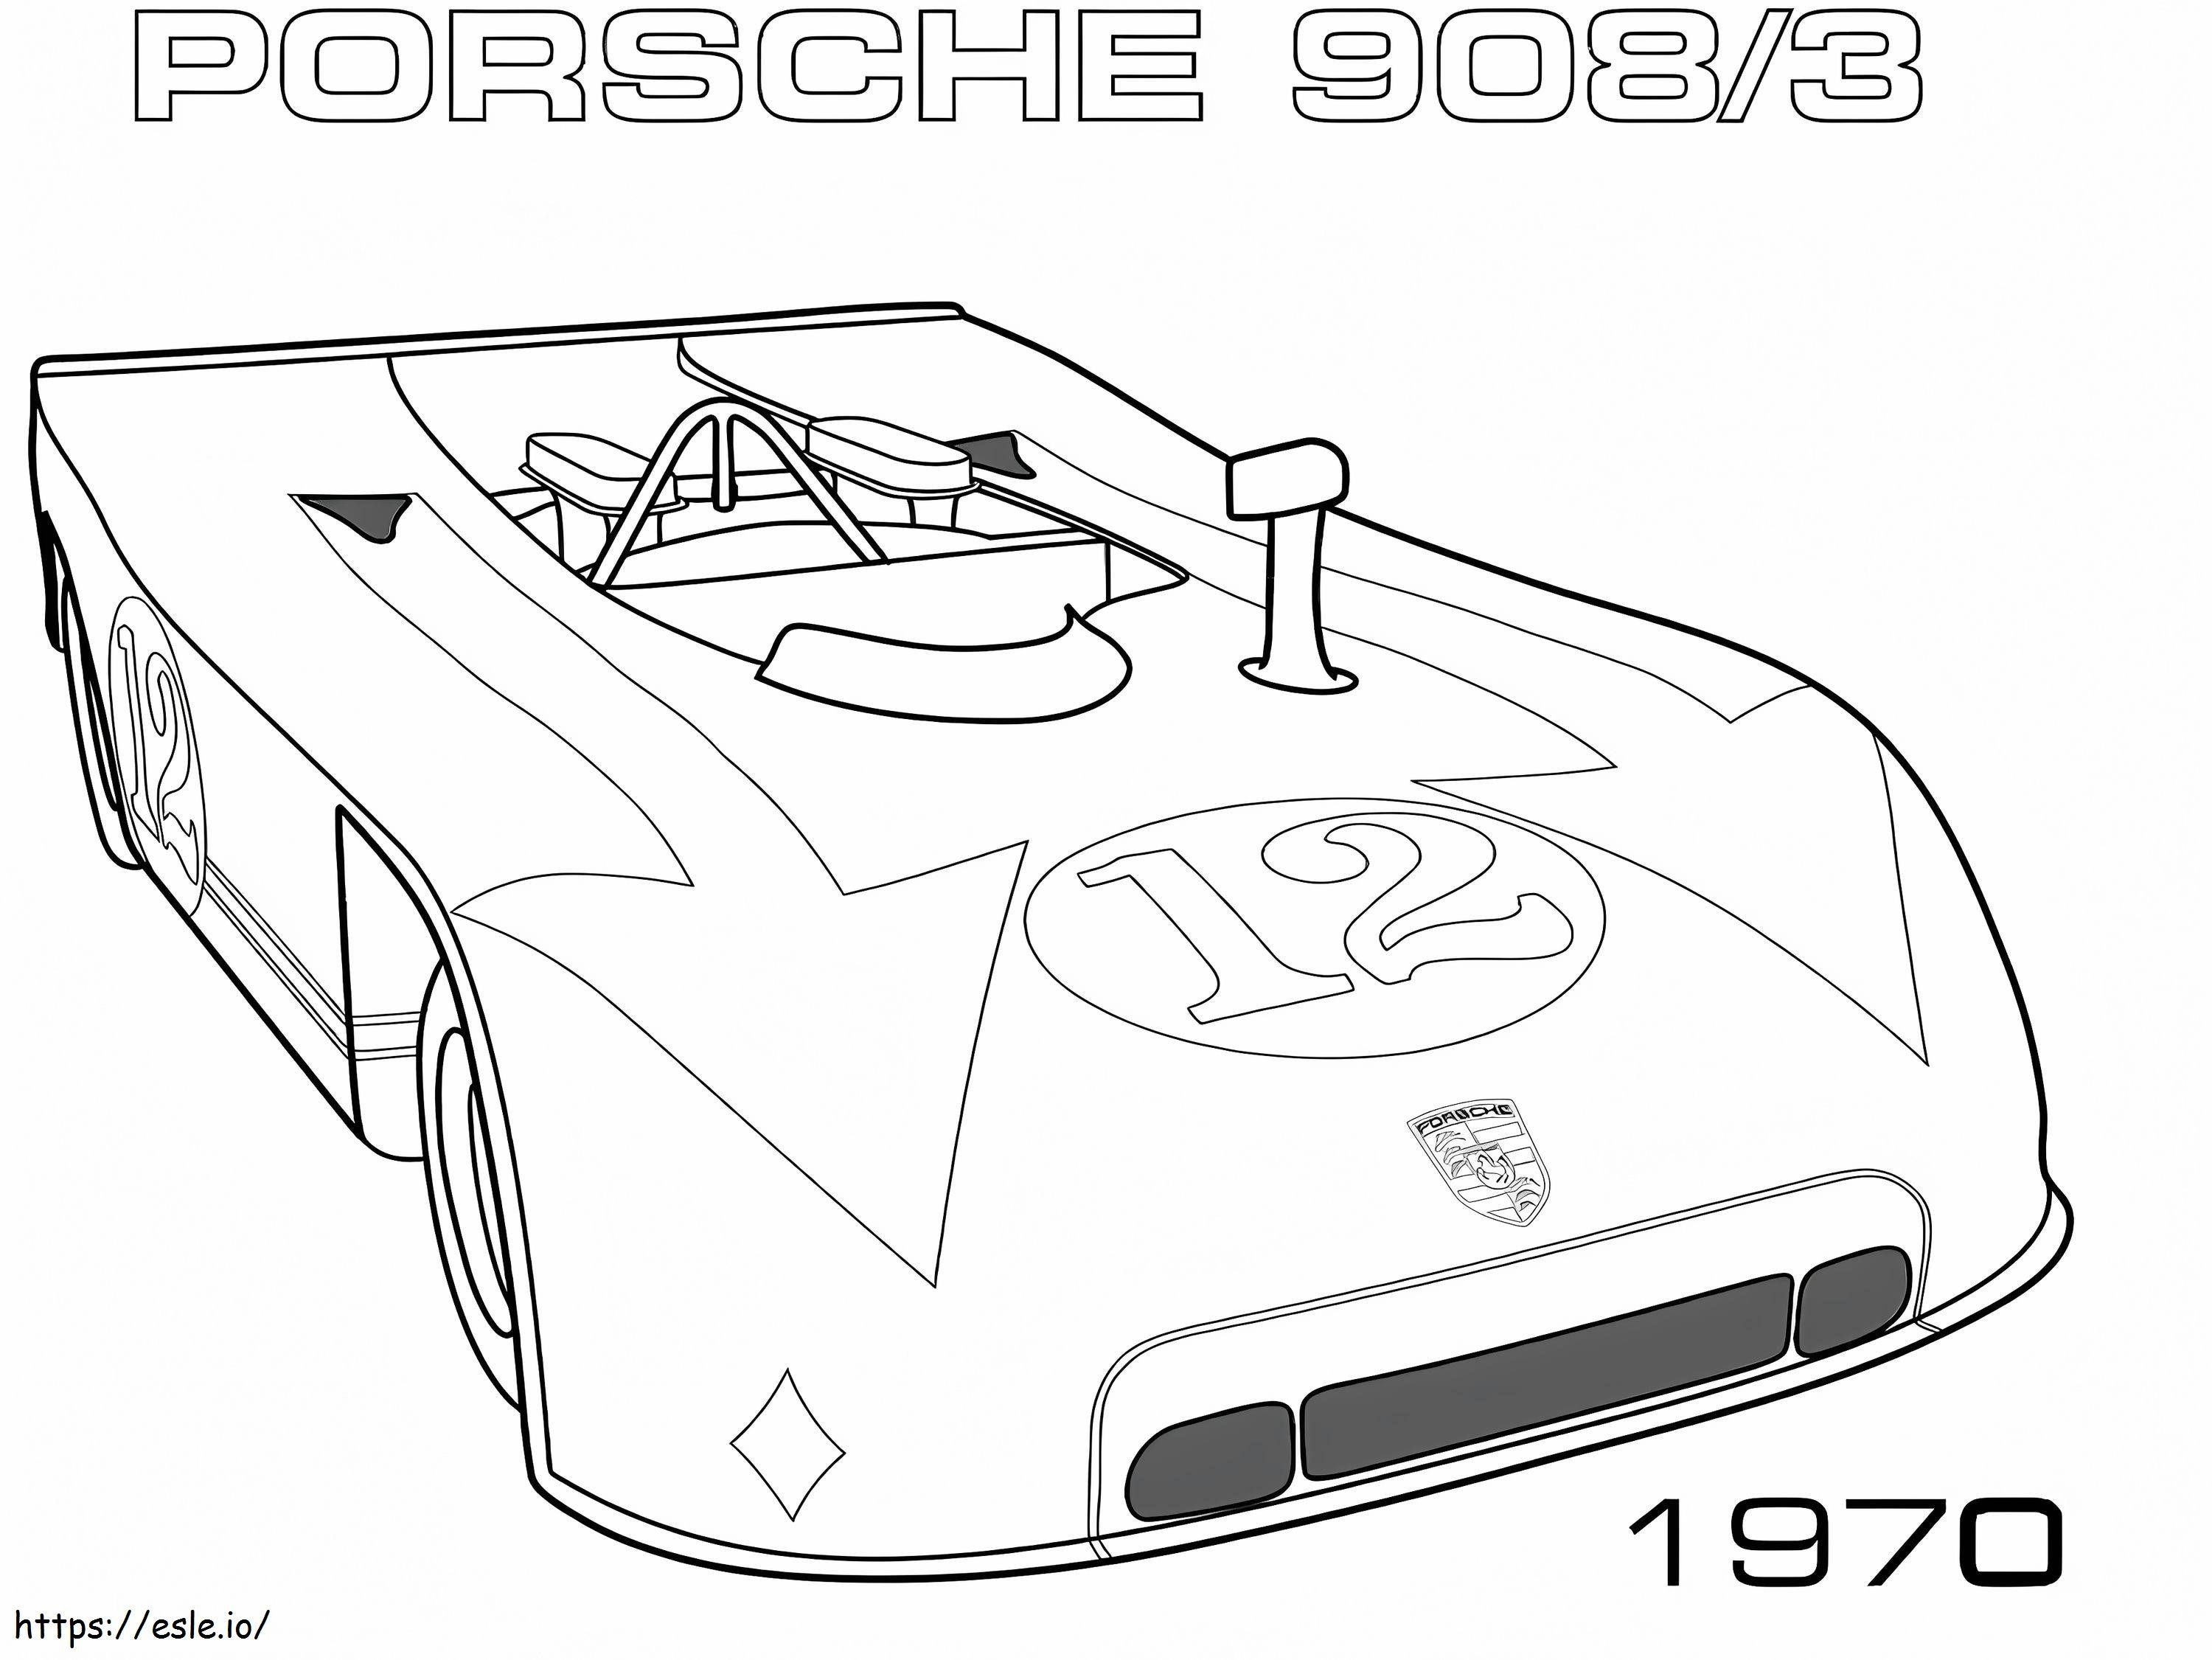 1585989209 1970 Porsche 9083 ausmalbilder